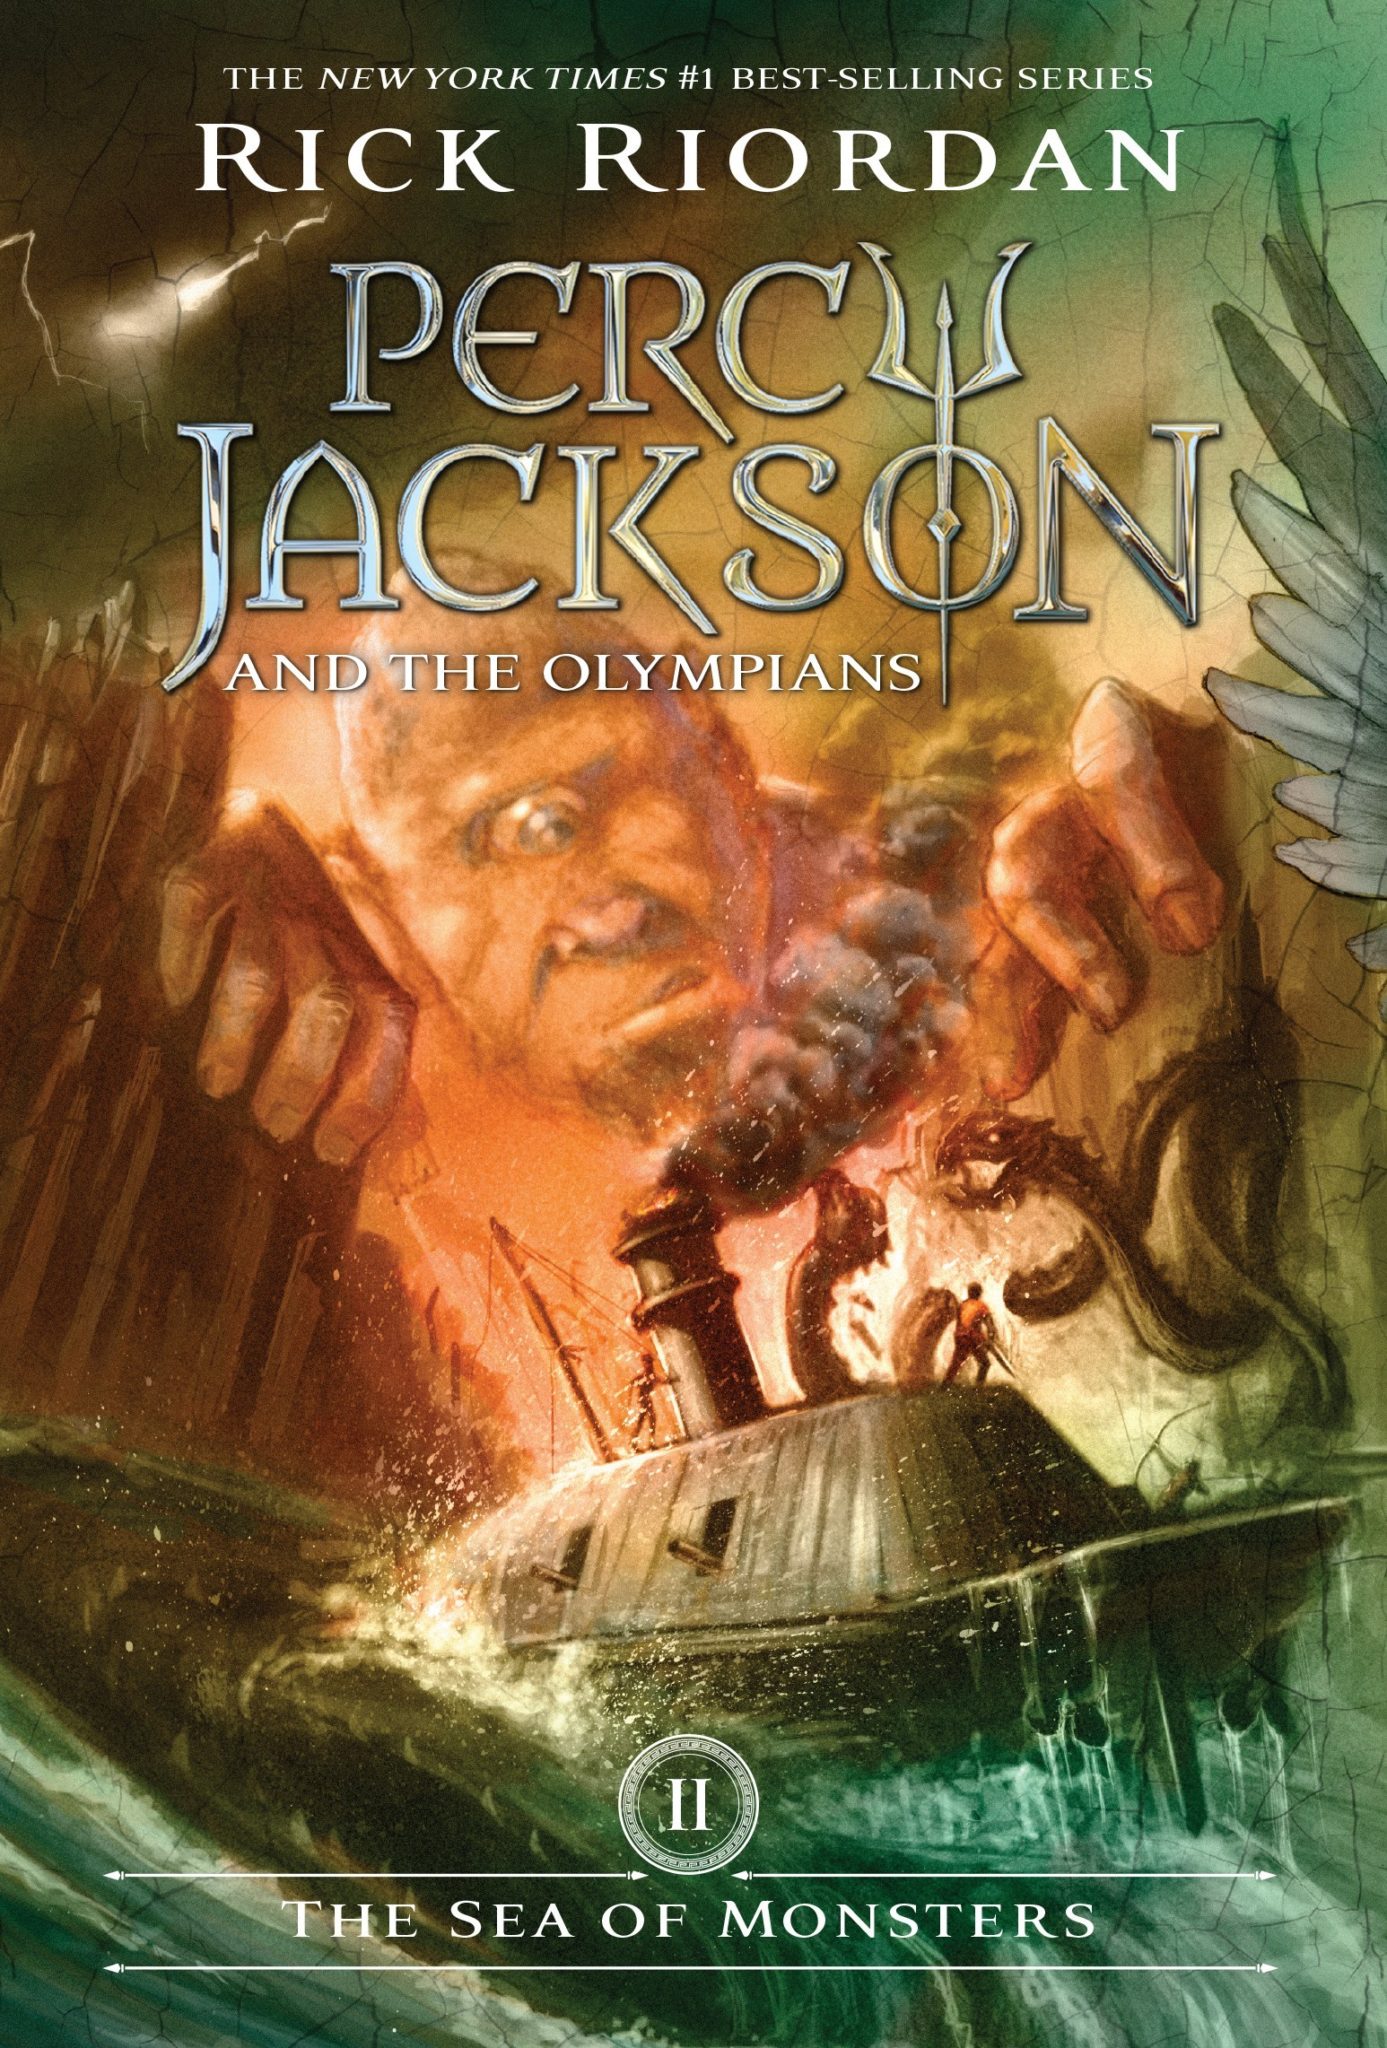 Libros De La Saga Percy Jackson